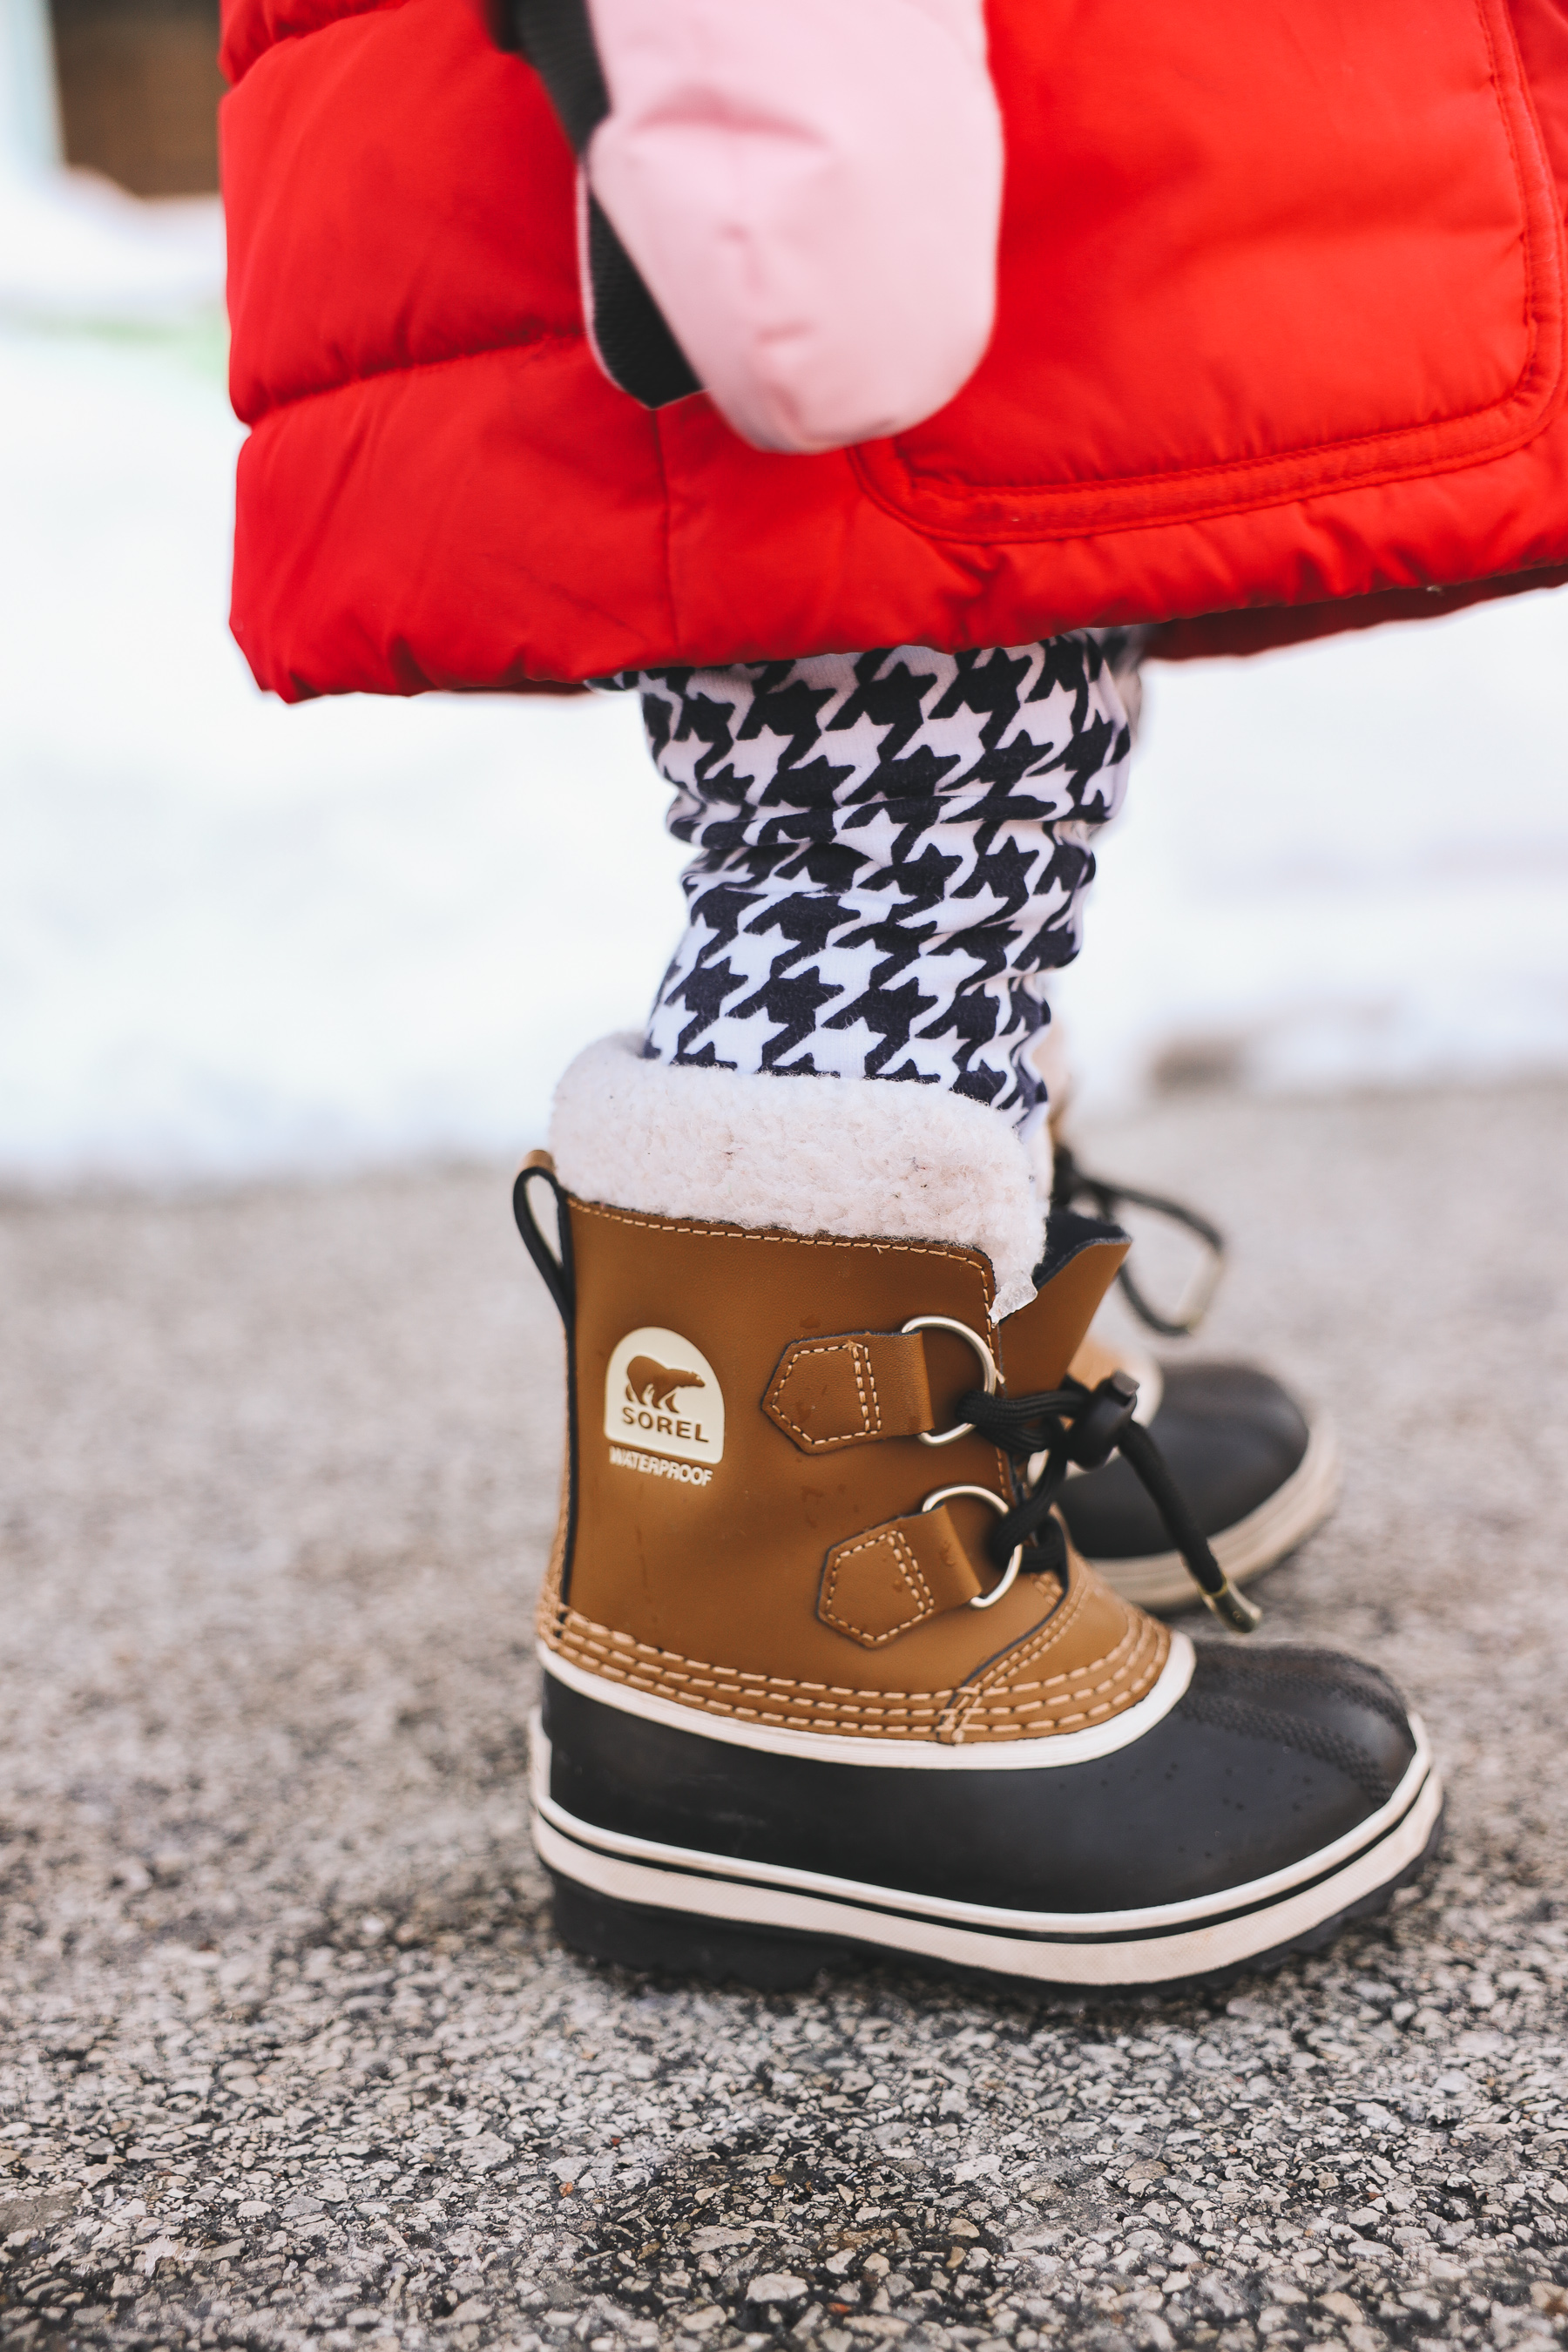 Toddler Sorels waterproof boots